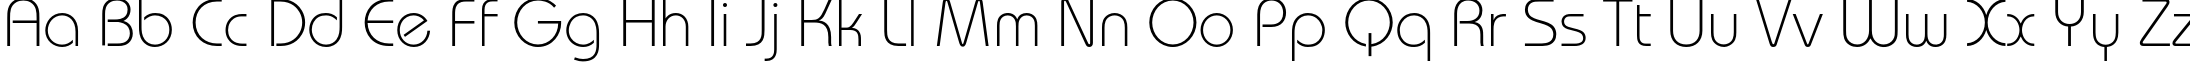 Пример написания английского алфавита шрифтом BauhausC Light